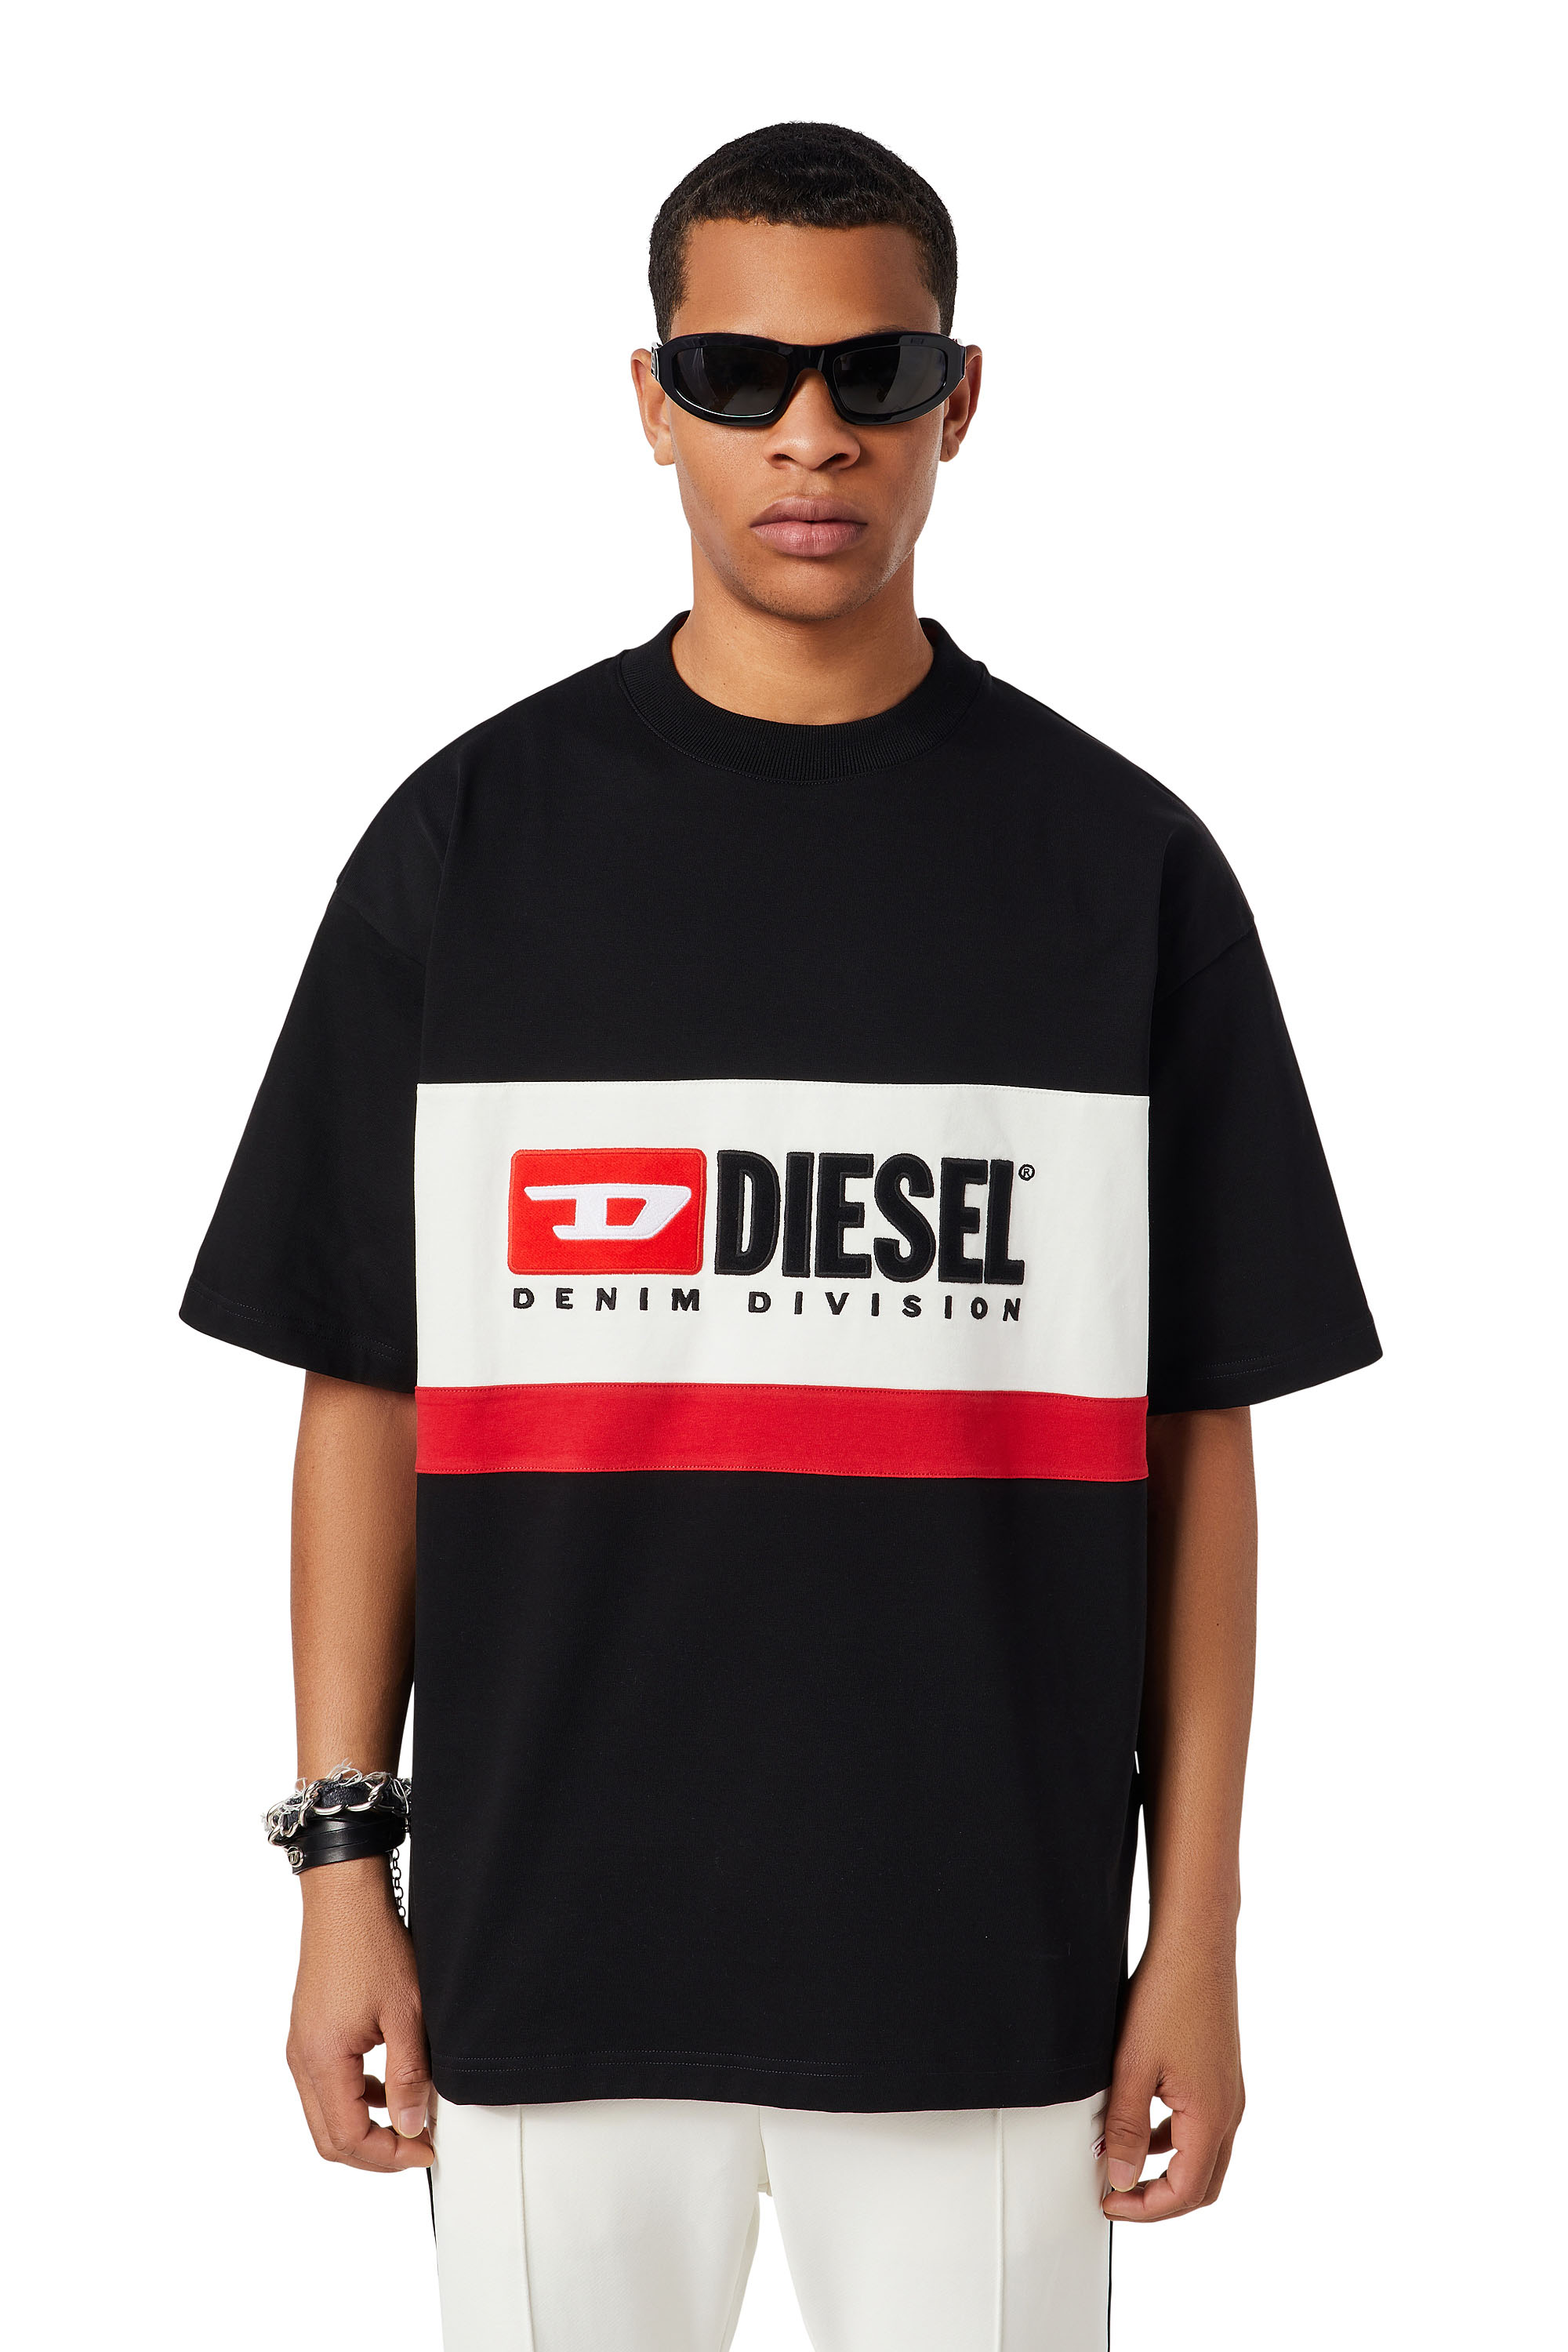 Diesel - T-STREAP-DIVISION, Schwarz - Image 1